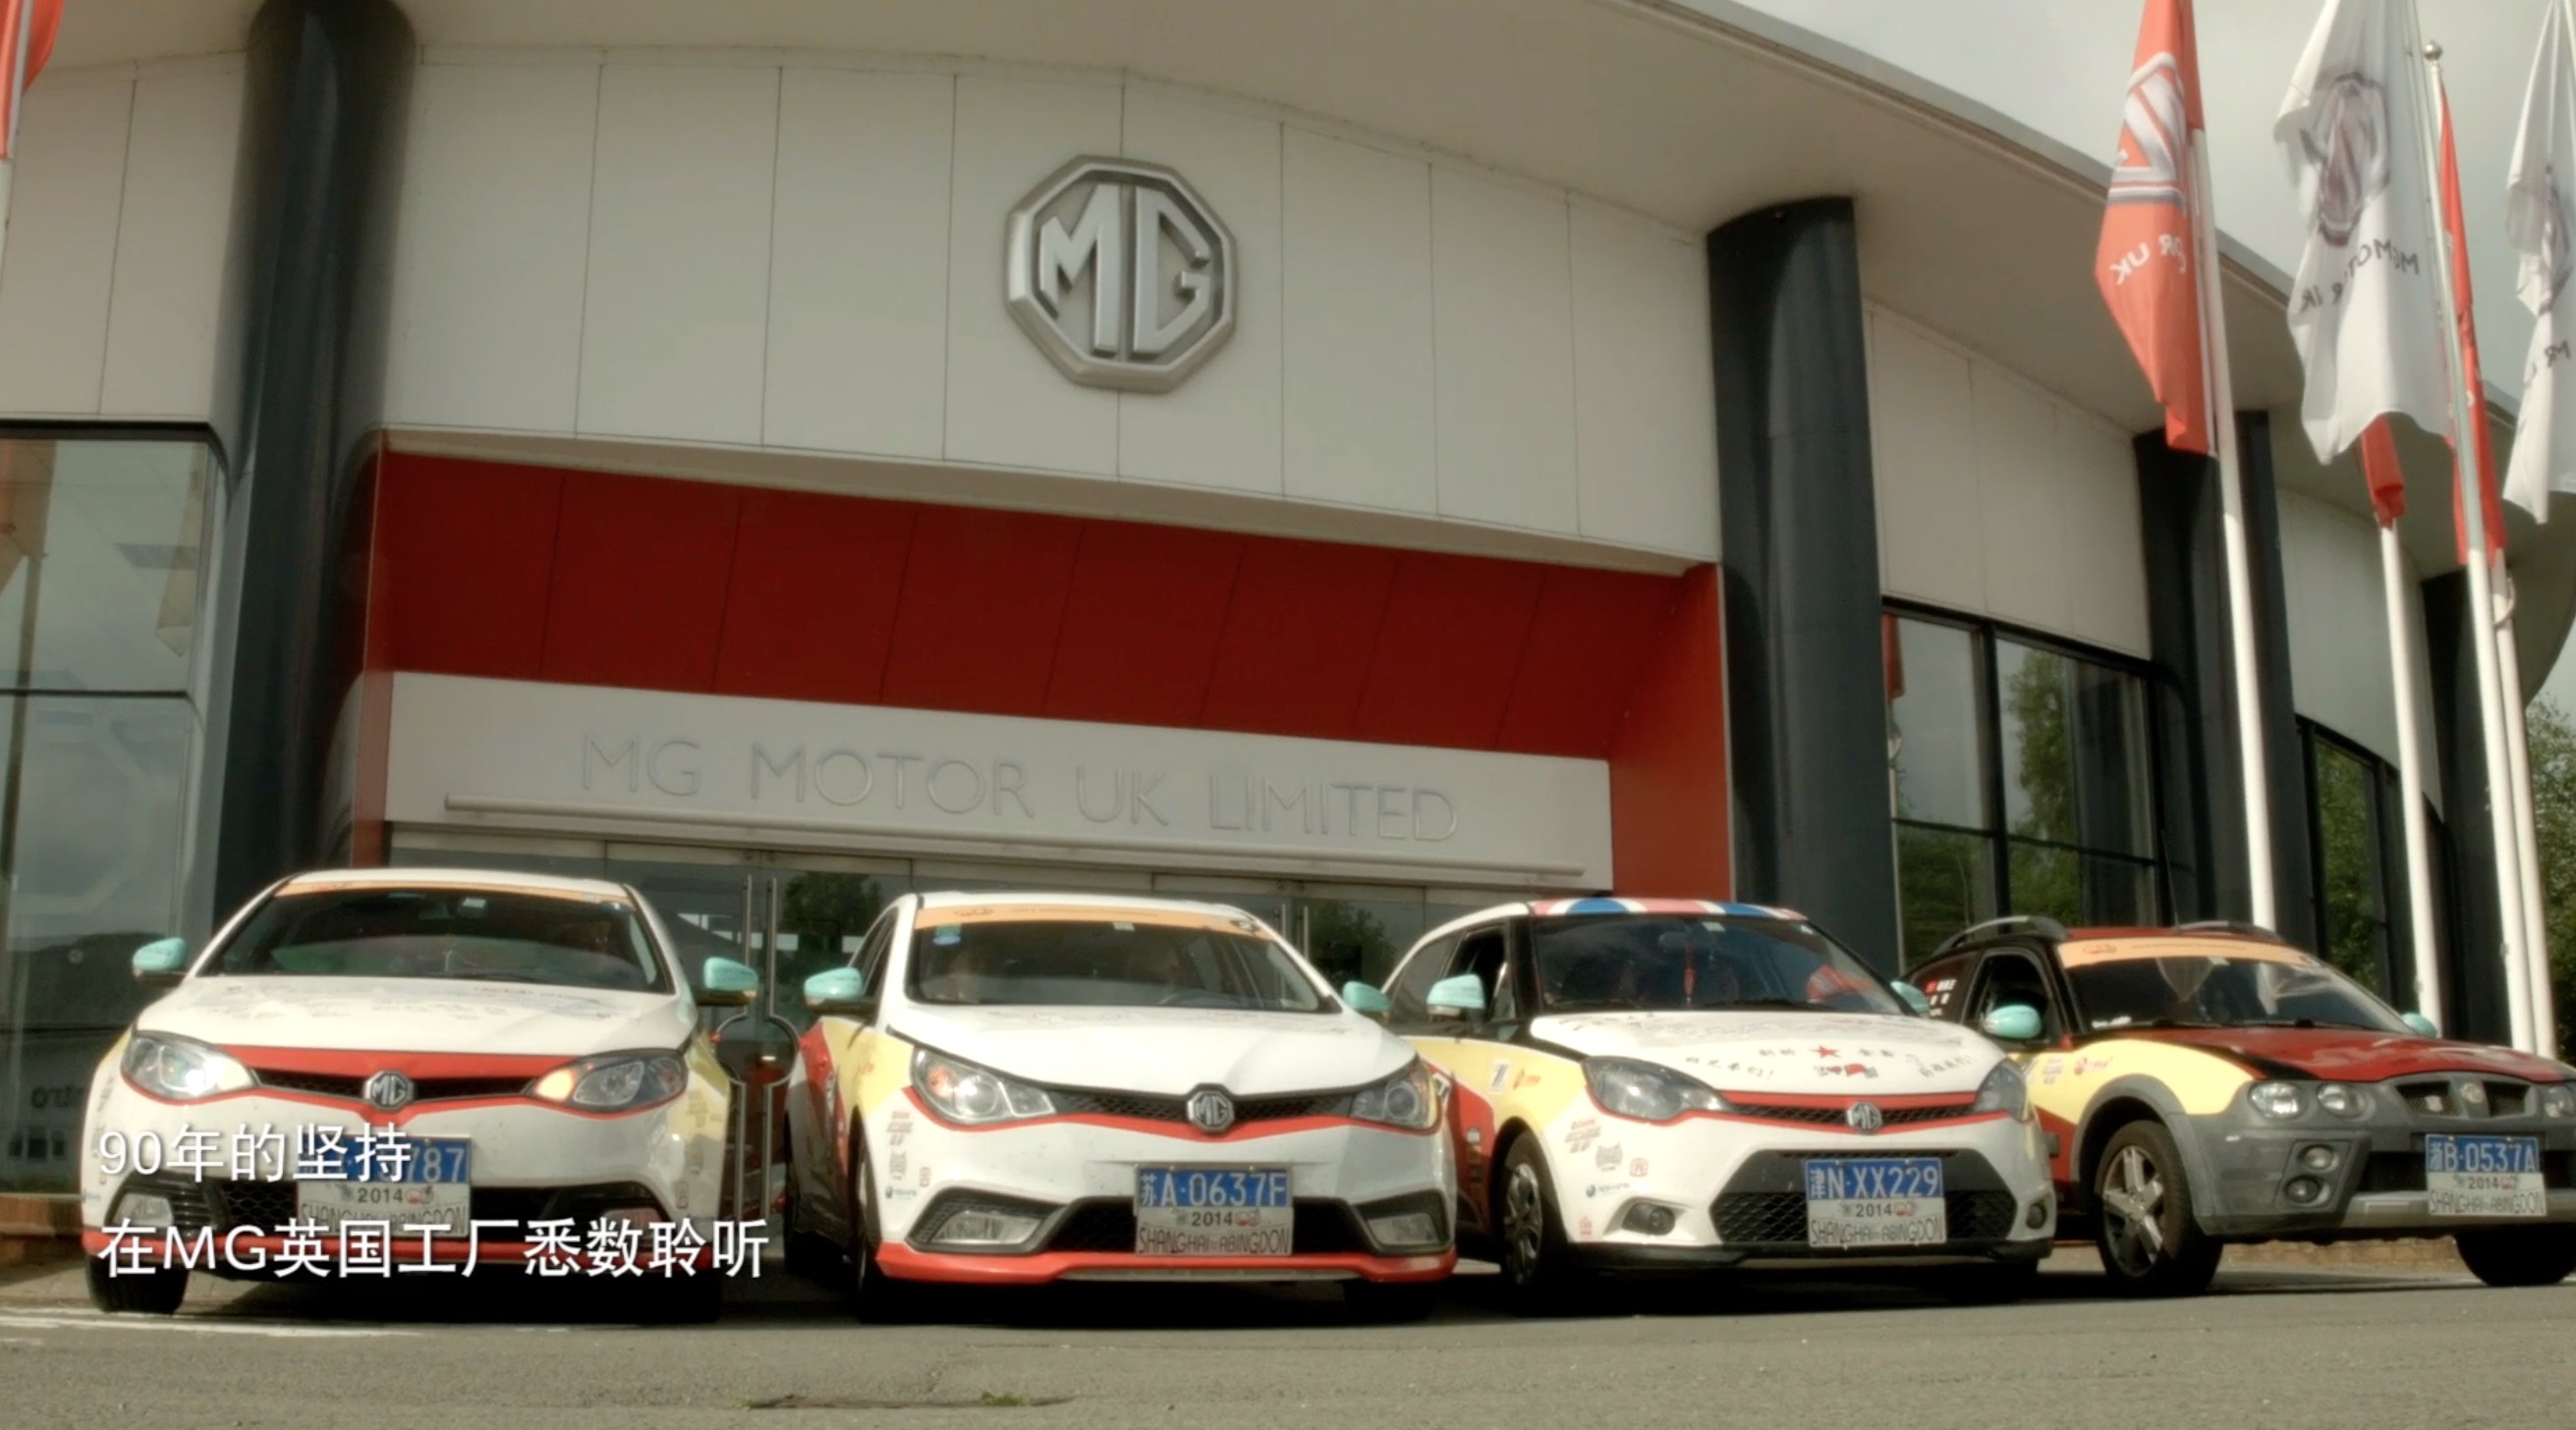 上海汽车 MG一起开车去英国 